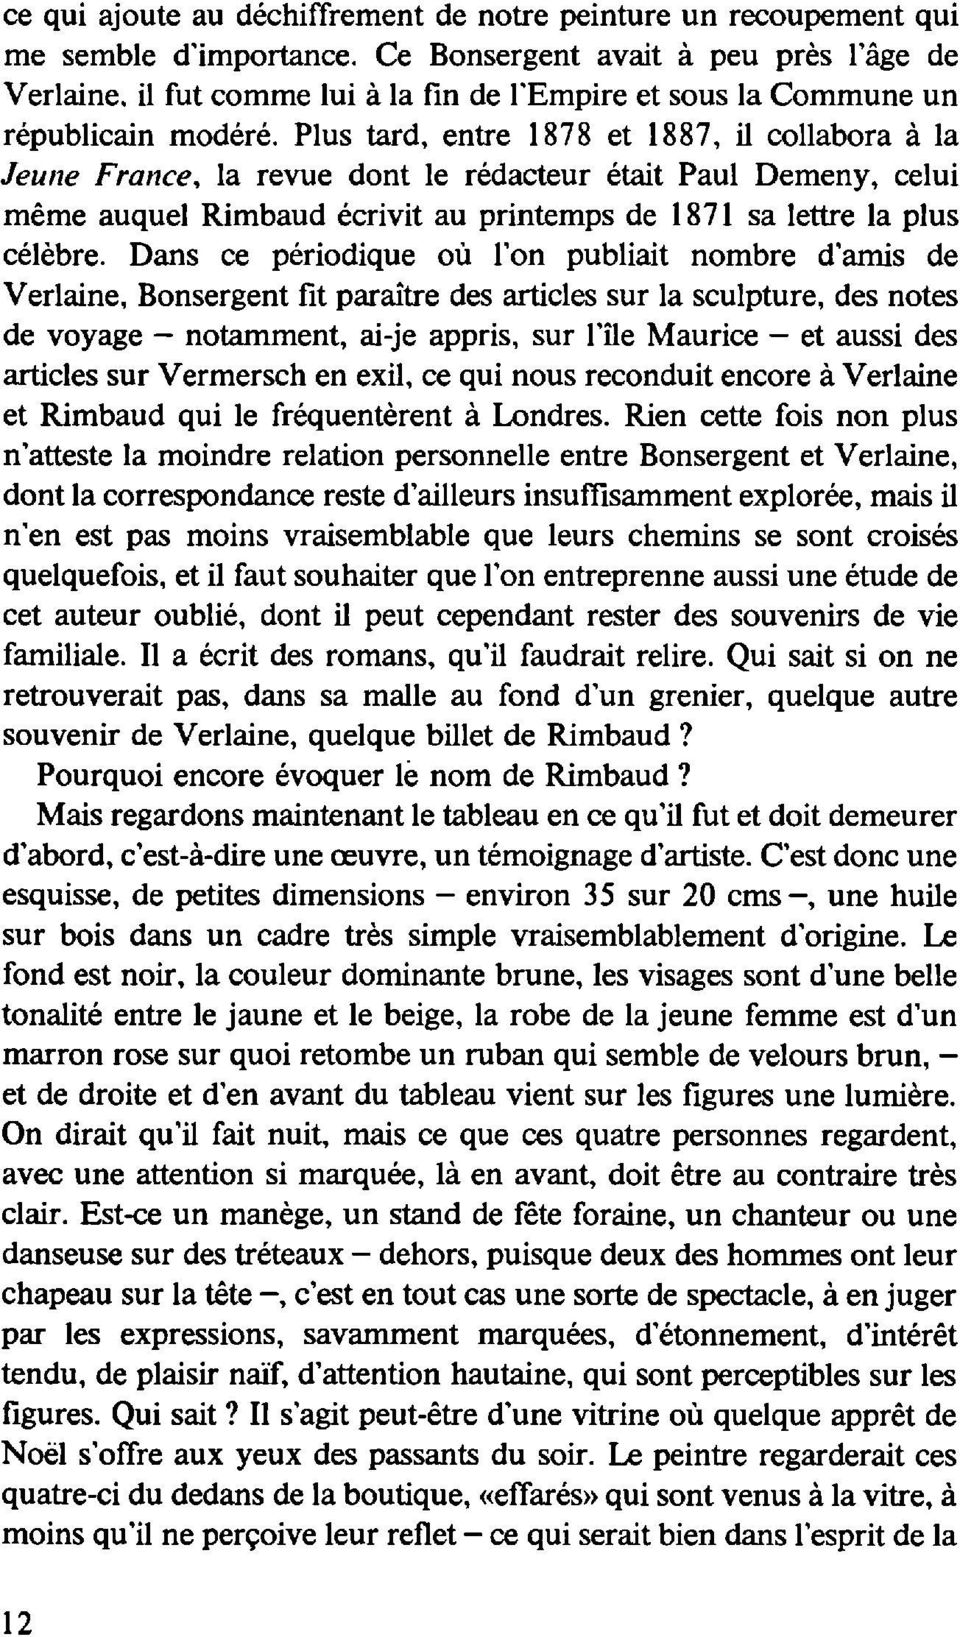 Plus tard, entre 1878 et 1887, il collabora à la Jeune France, la revue dont le rédacteur était Paul Demeny, celui même auquel Rimbaud écrivit au printemps de 1871 sa lettre la plus célèbre.